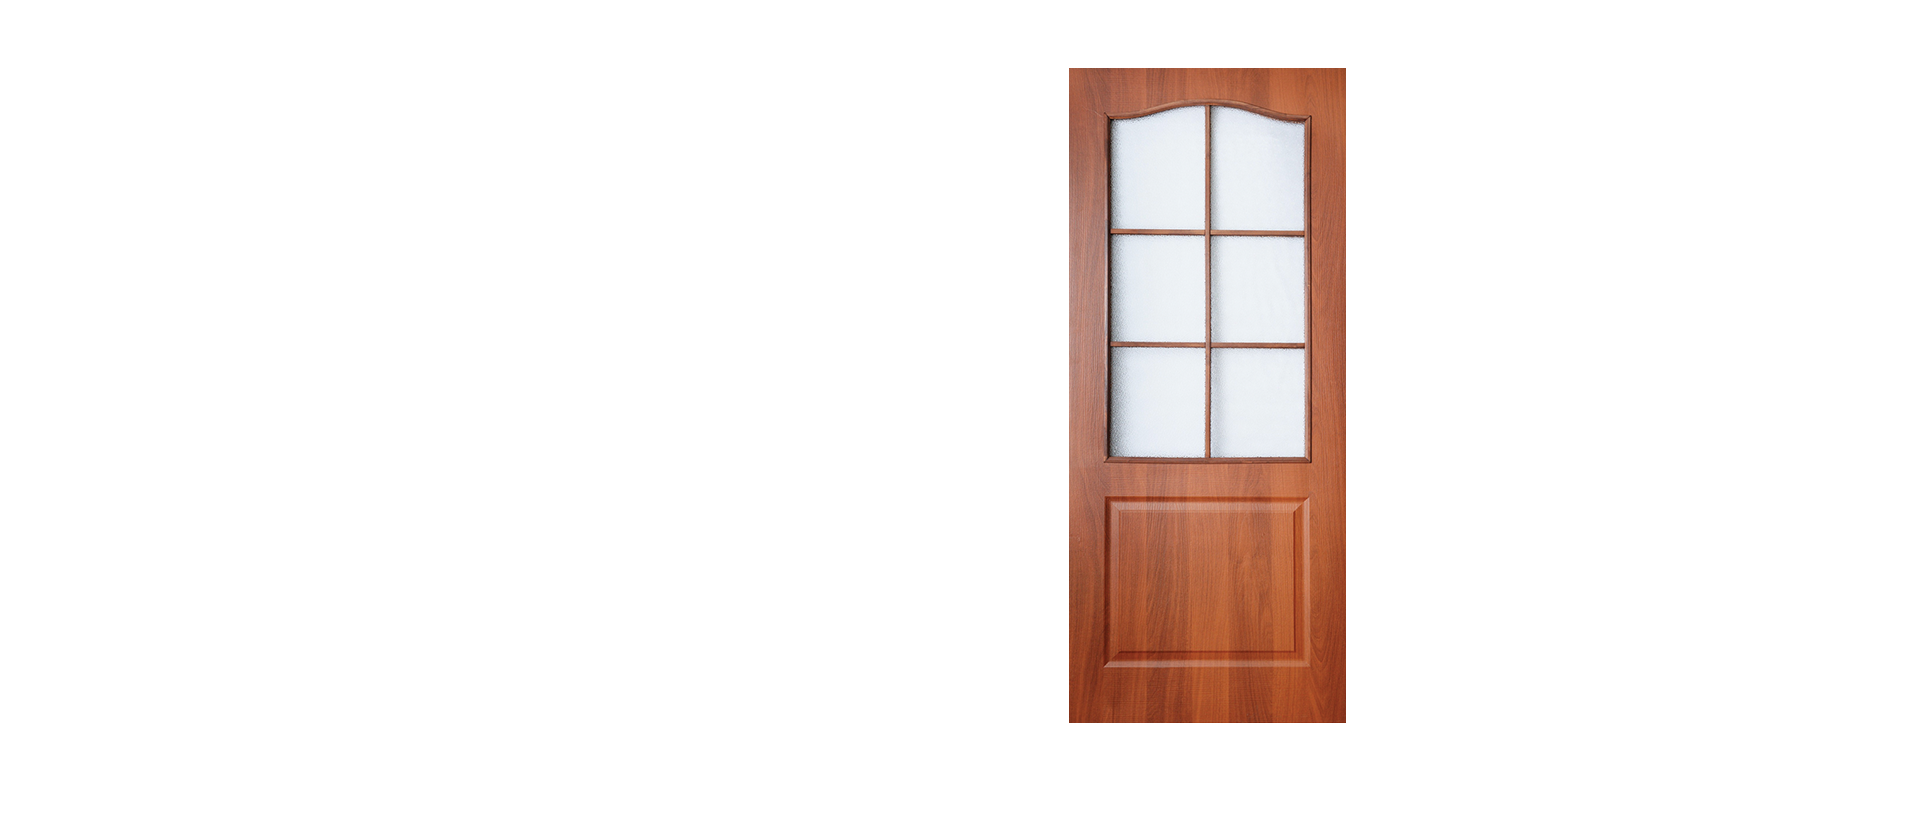 Полотно двери ламинированное глухое со стеклом Терри Classique Итальянский орех 800*2000 мм